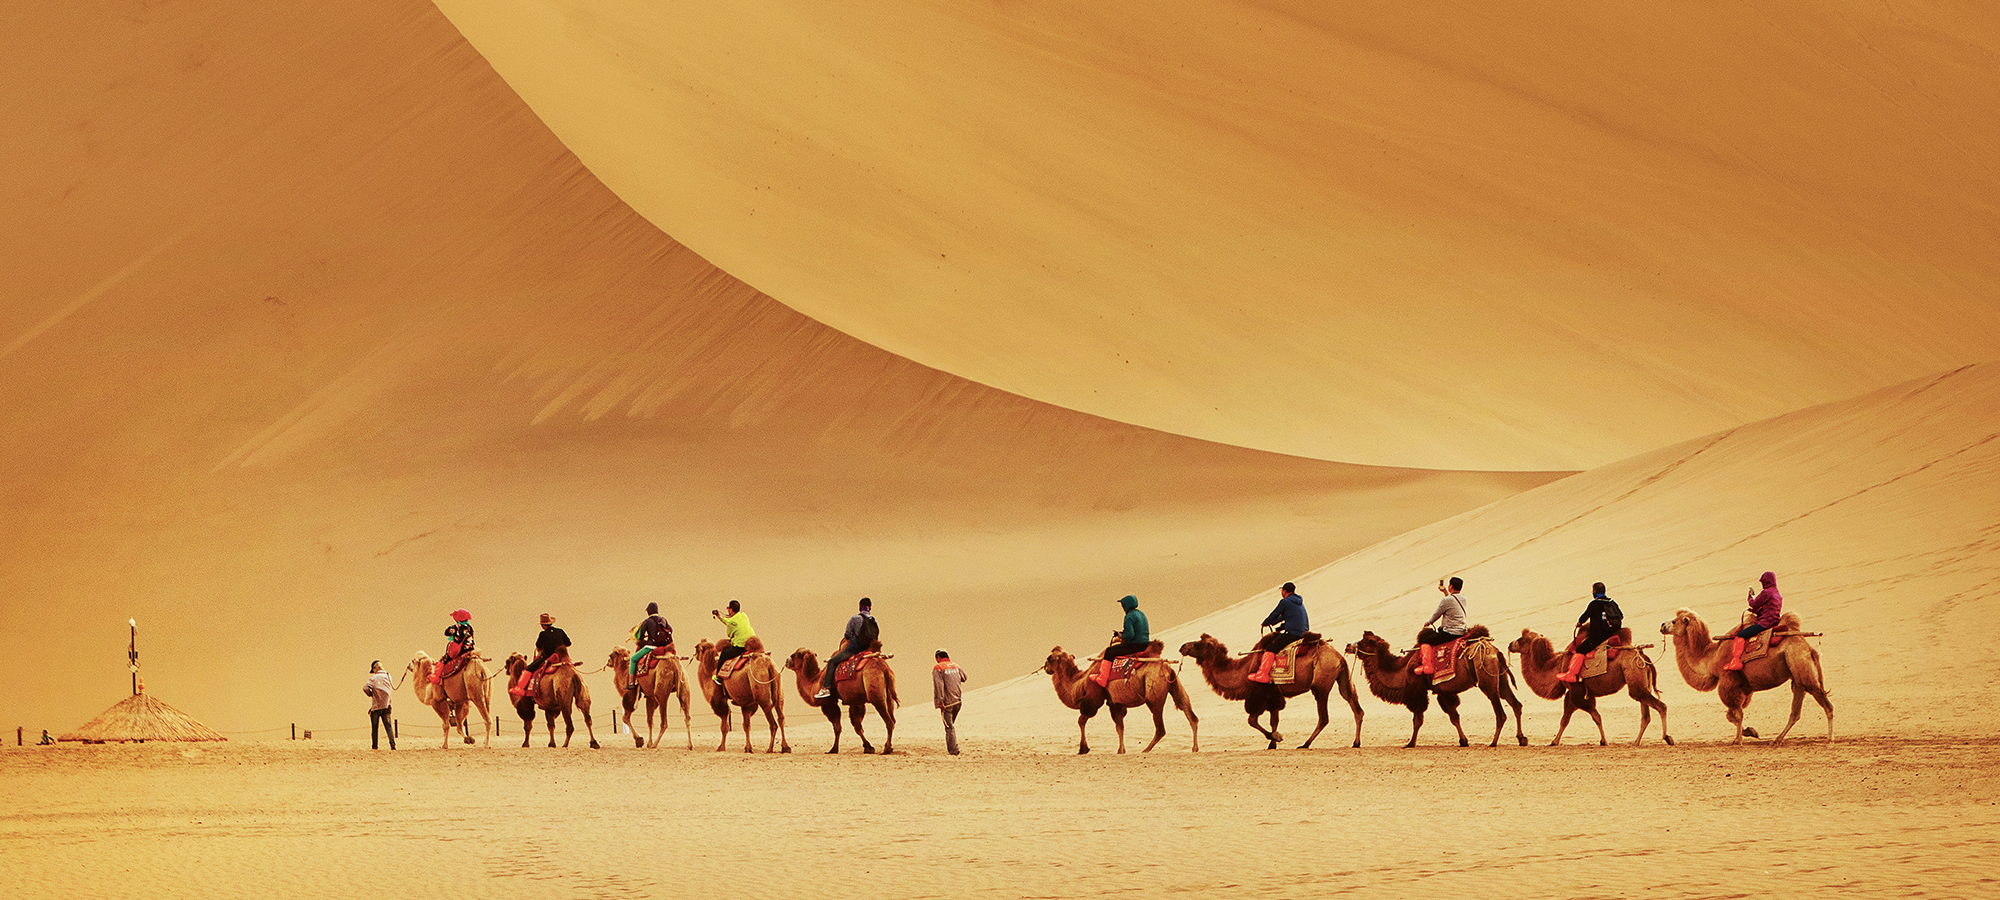 骆驼与沙漠